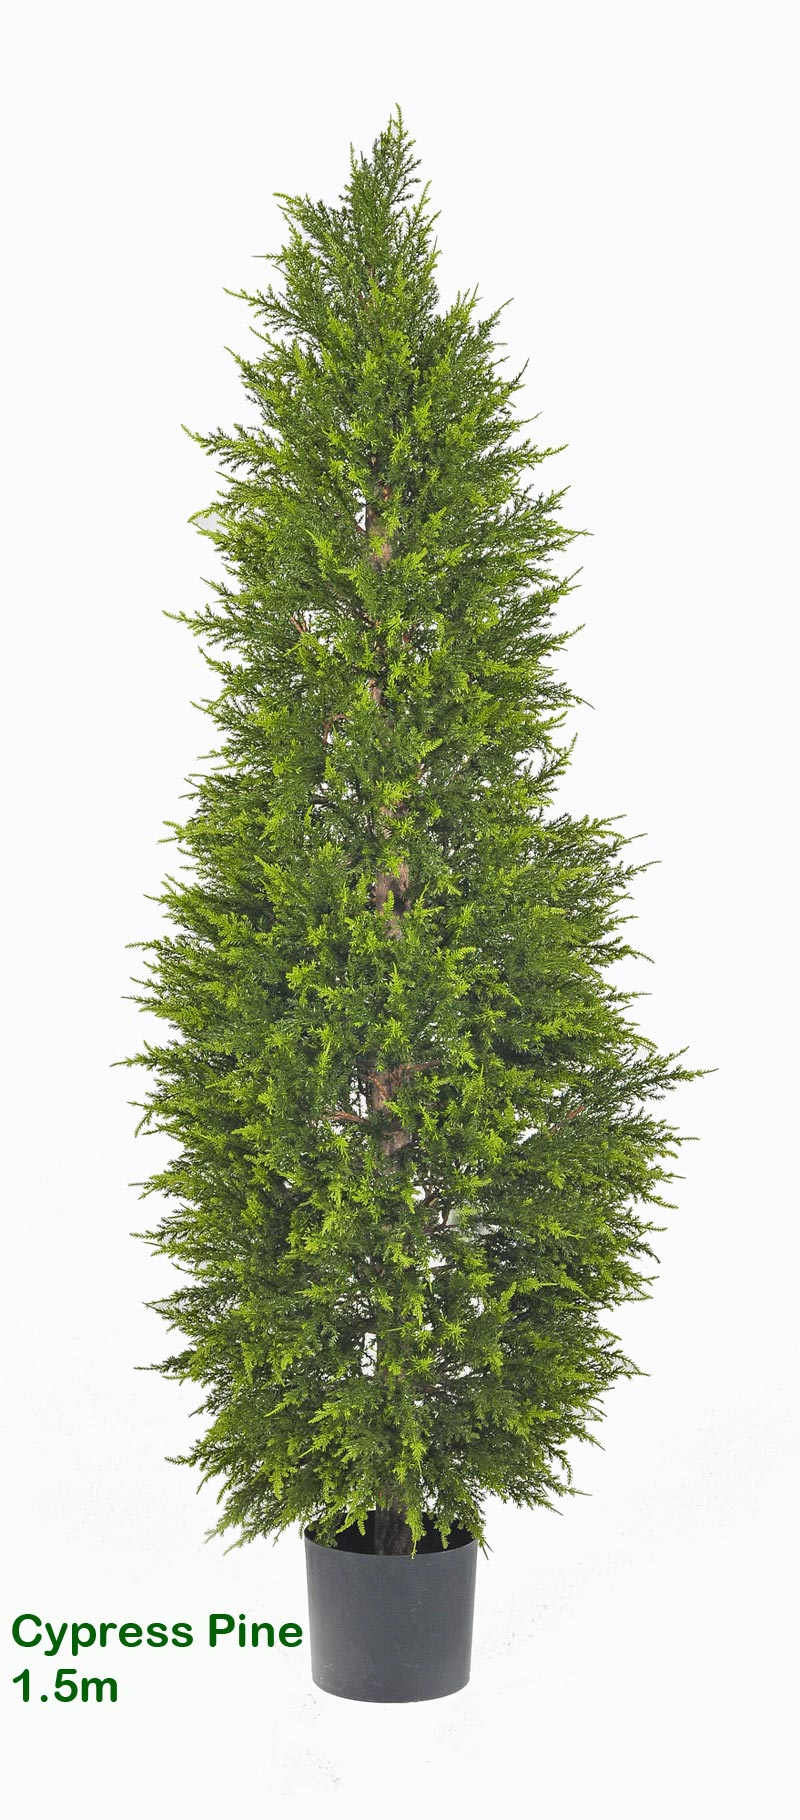 Cypress Pine 1.5M